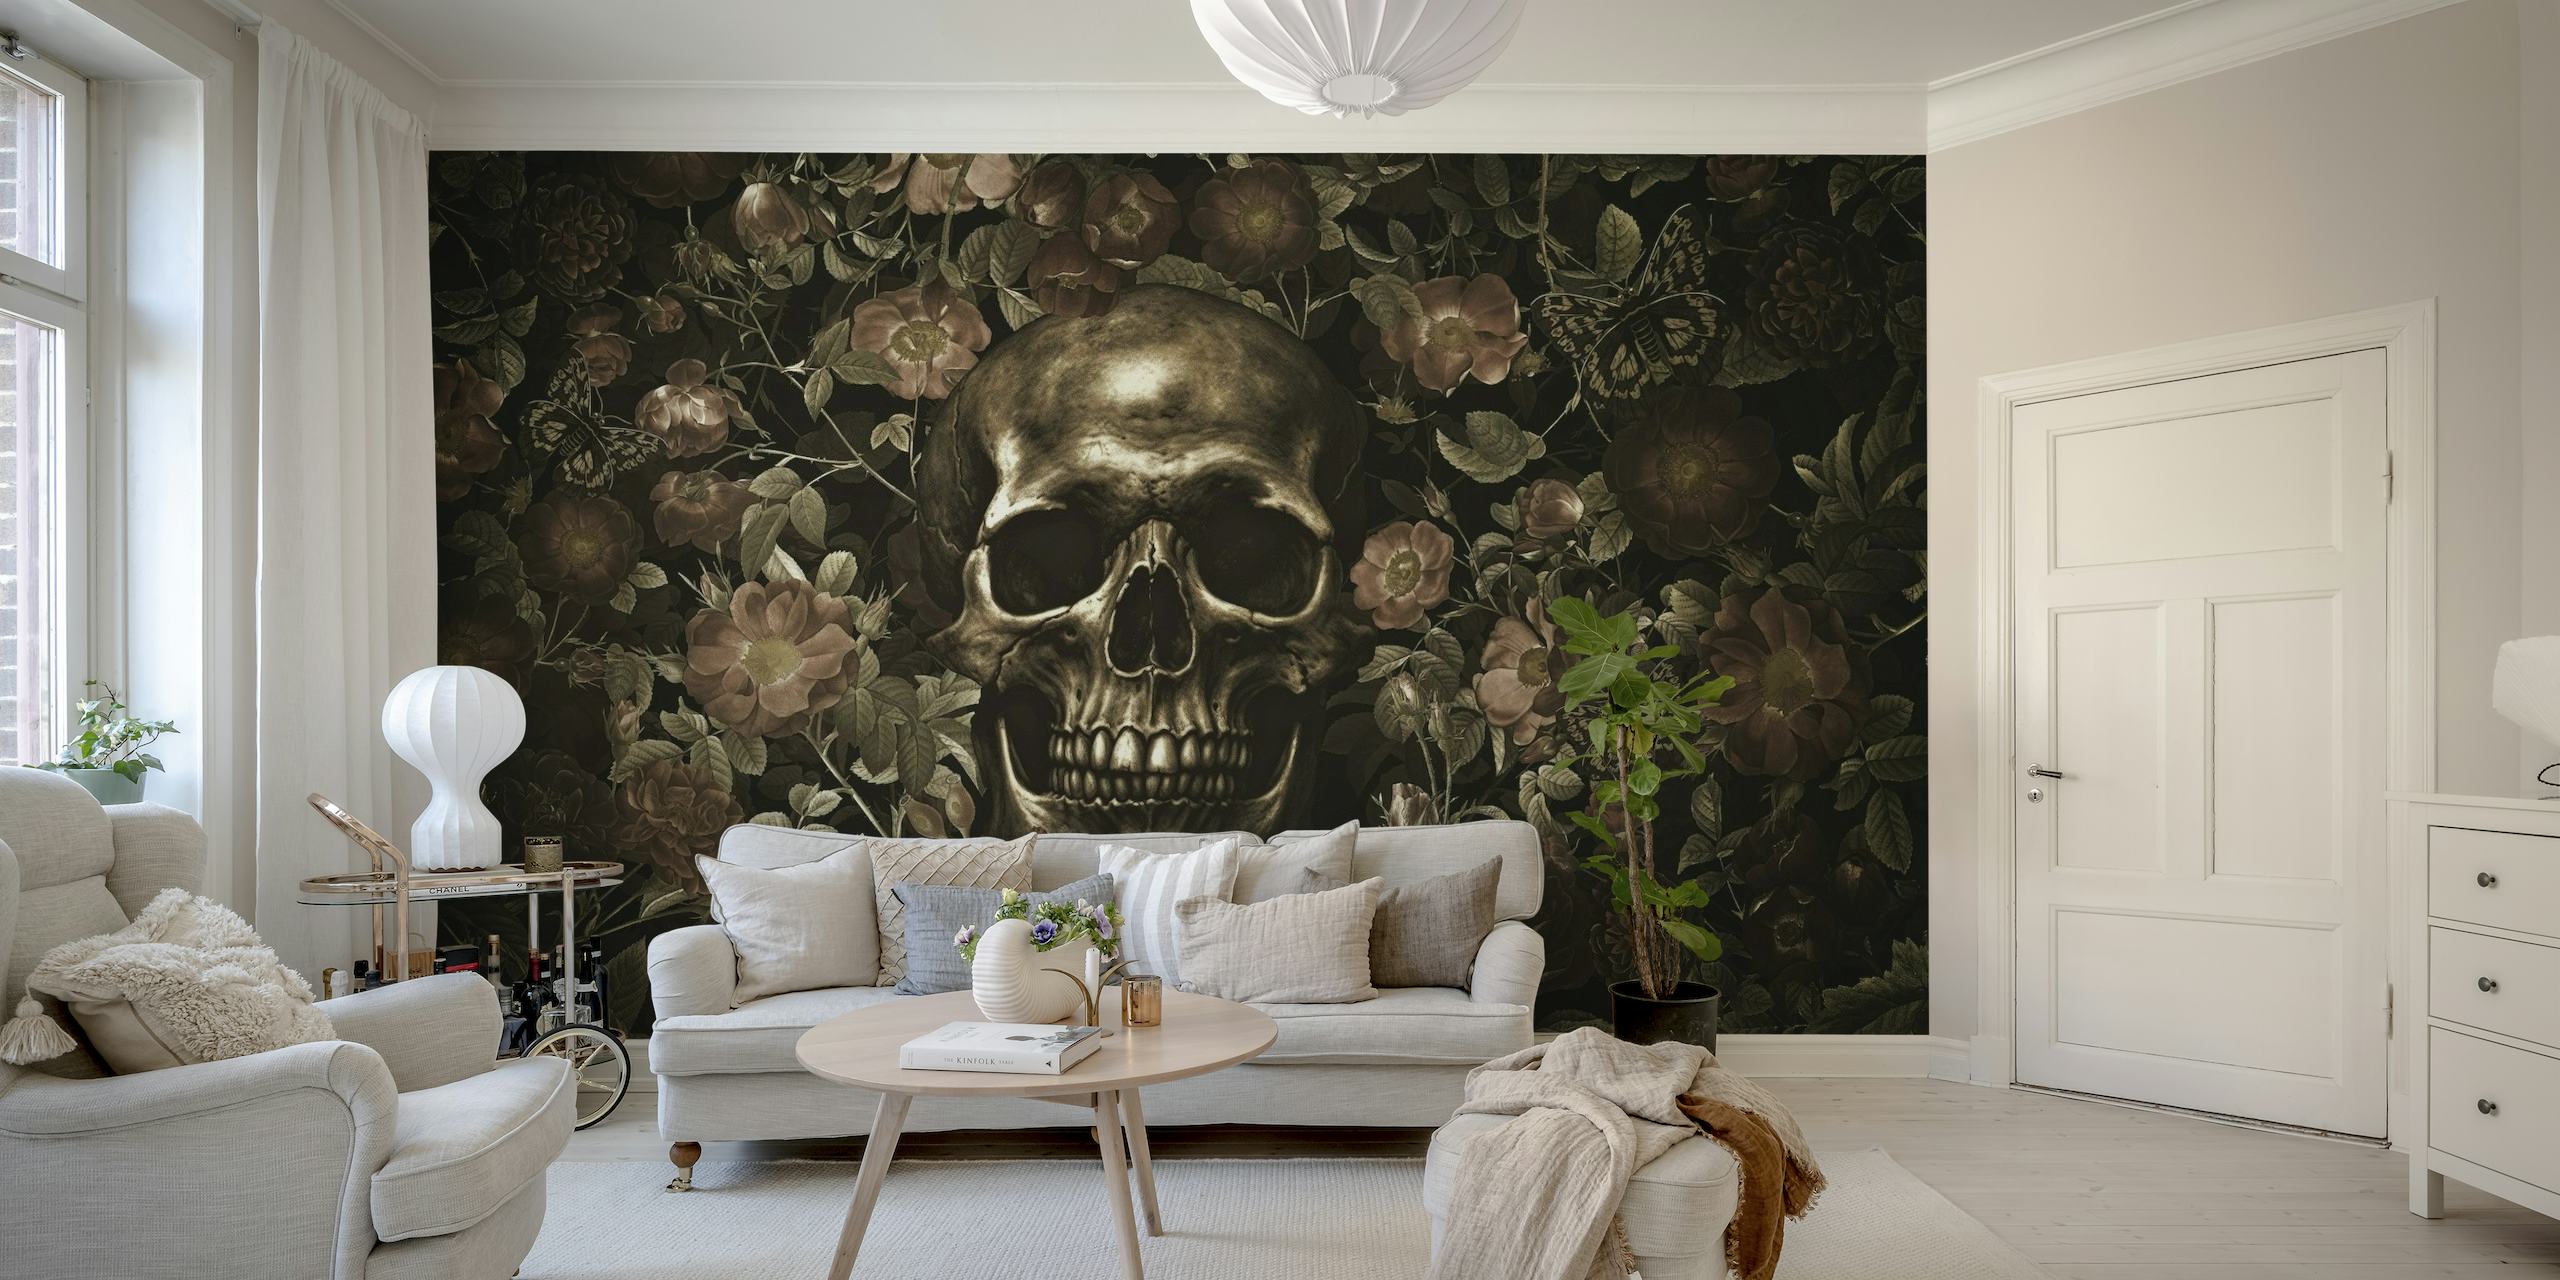 Een gotisch geïnspireerde muurschildering met een gouden schedel omringd door donker bloeiende rozen